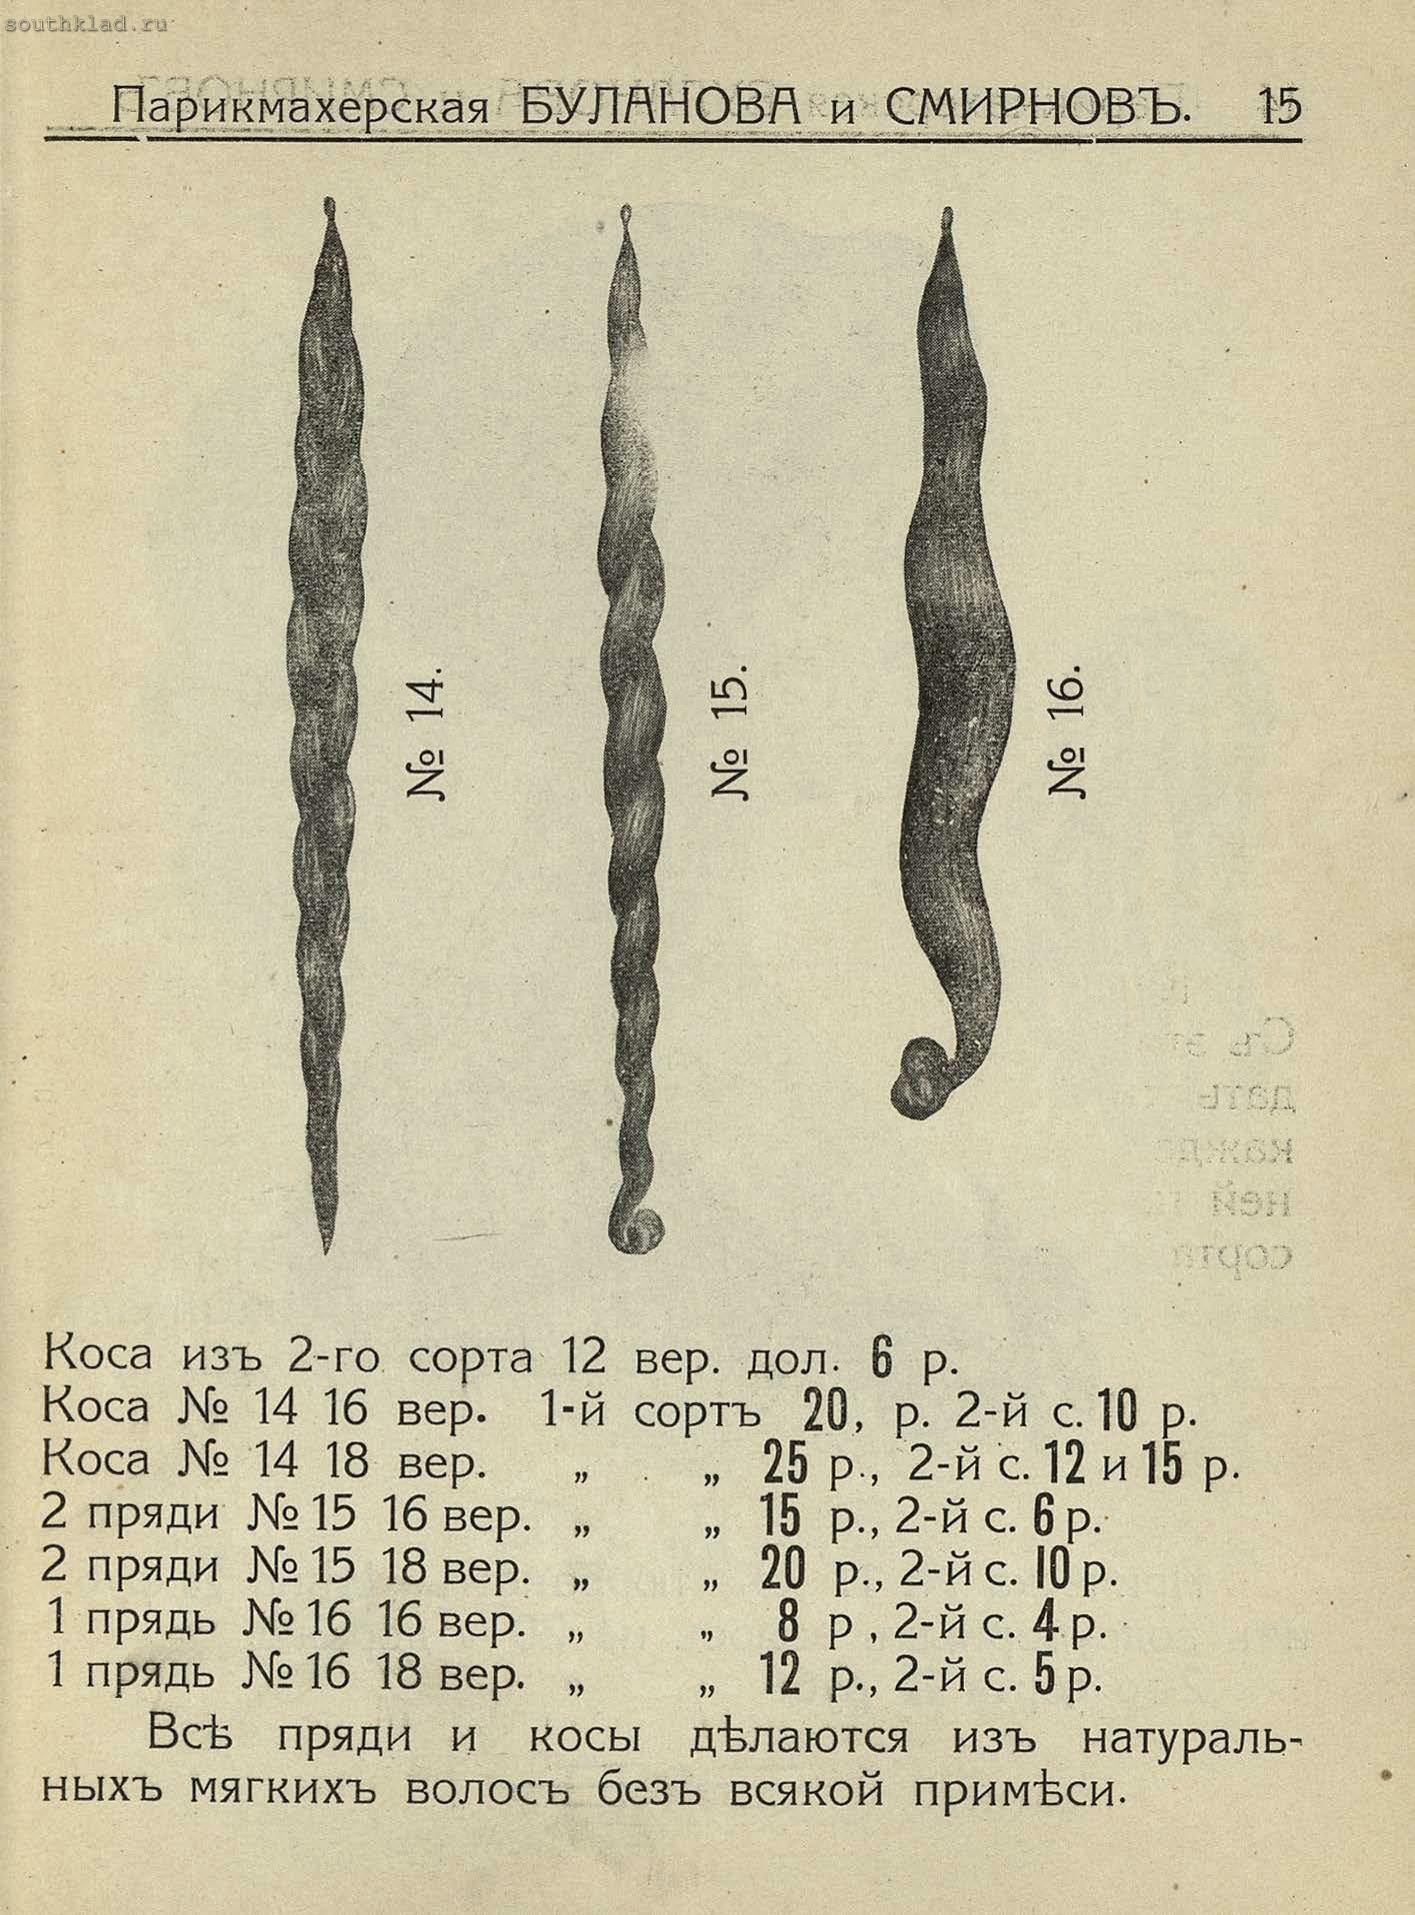 Прейсrурант волосяных изделий Буланова и Смирнов 1913 года История,Реклама